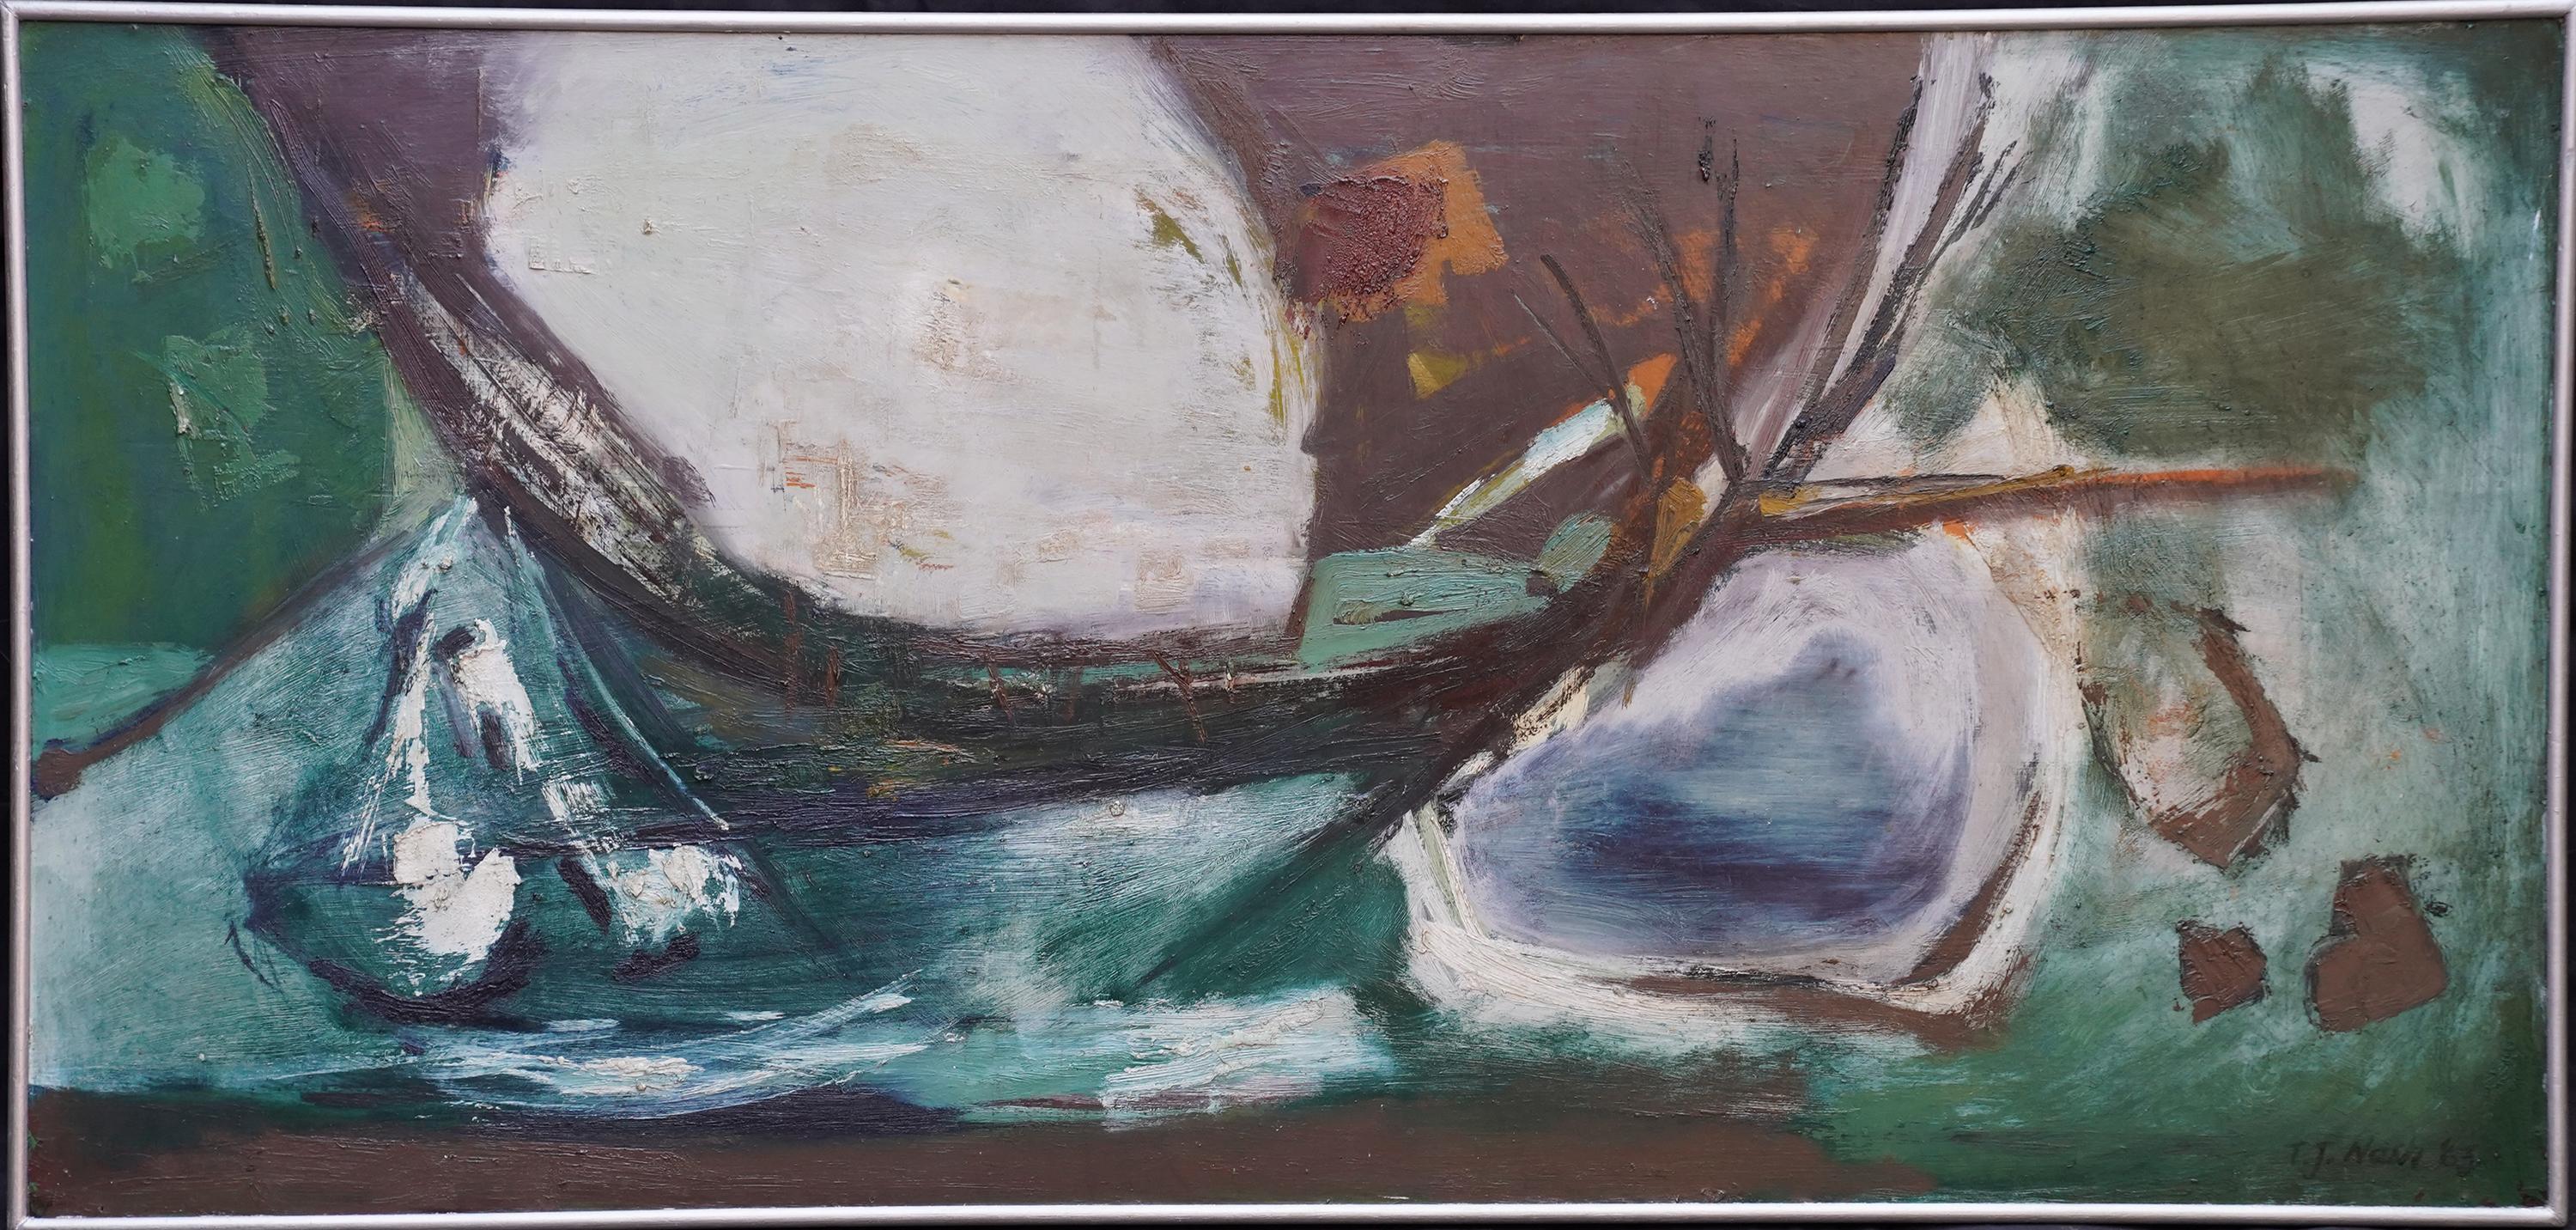 Abstract Painting Tom Nash - Vallée abstraite - Peinture à l'huile abstraite d'art gallois de 1963